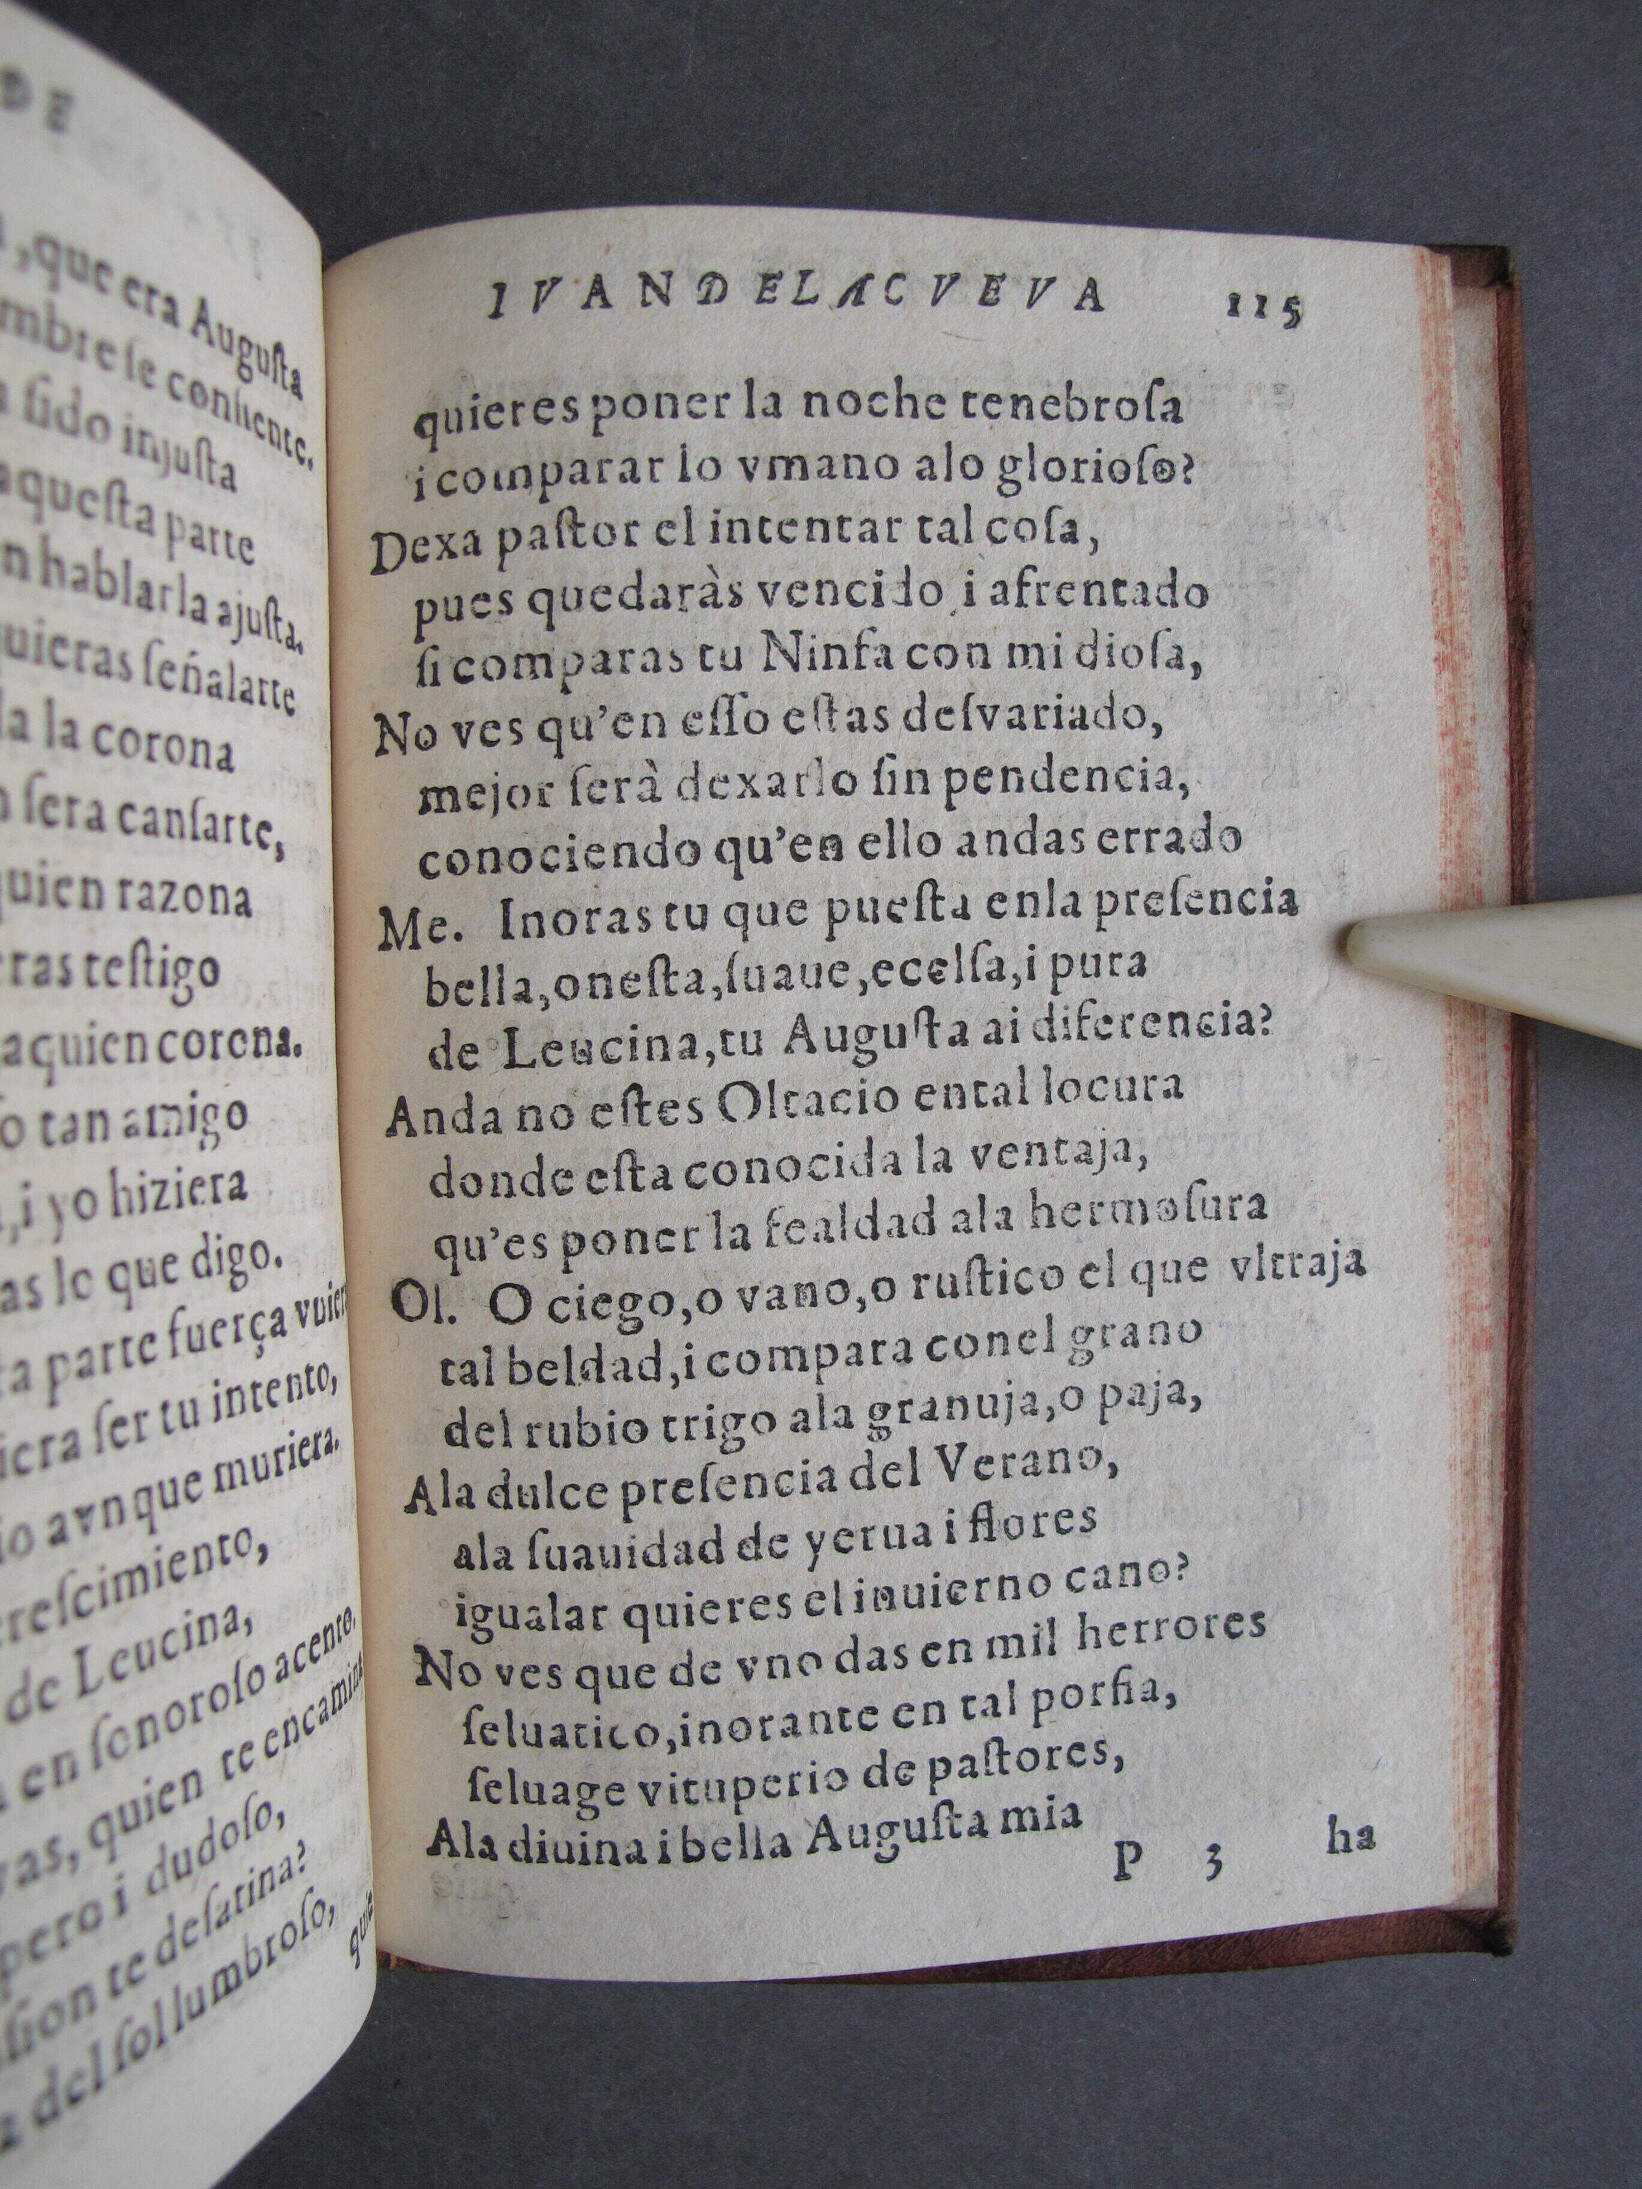 Folio P3